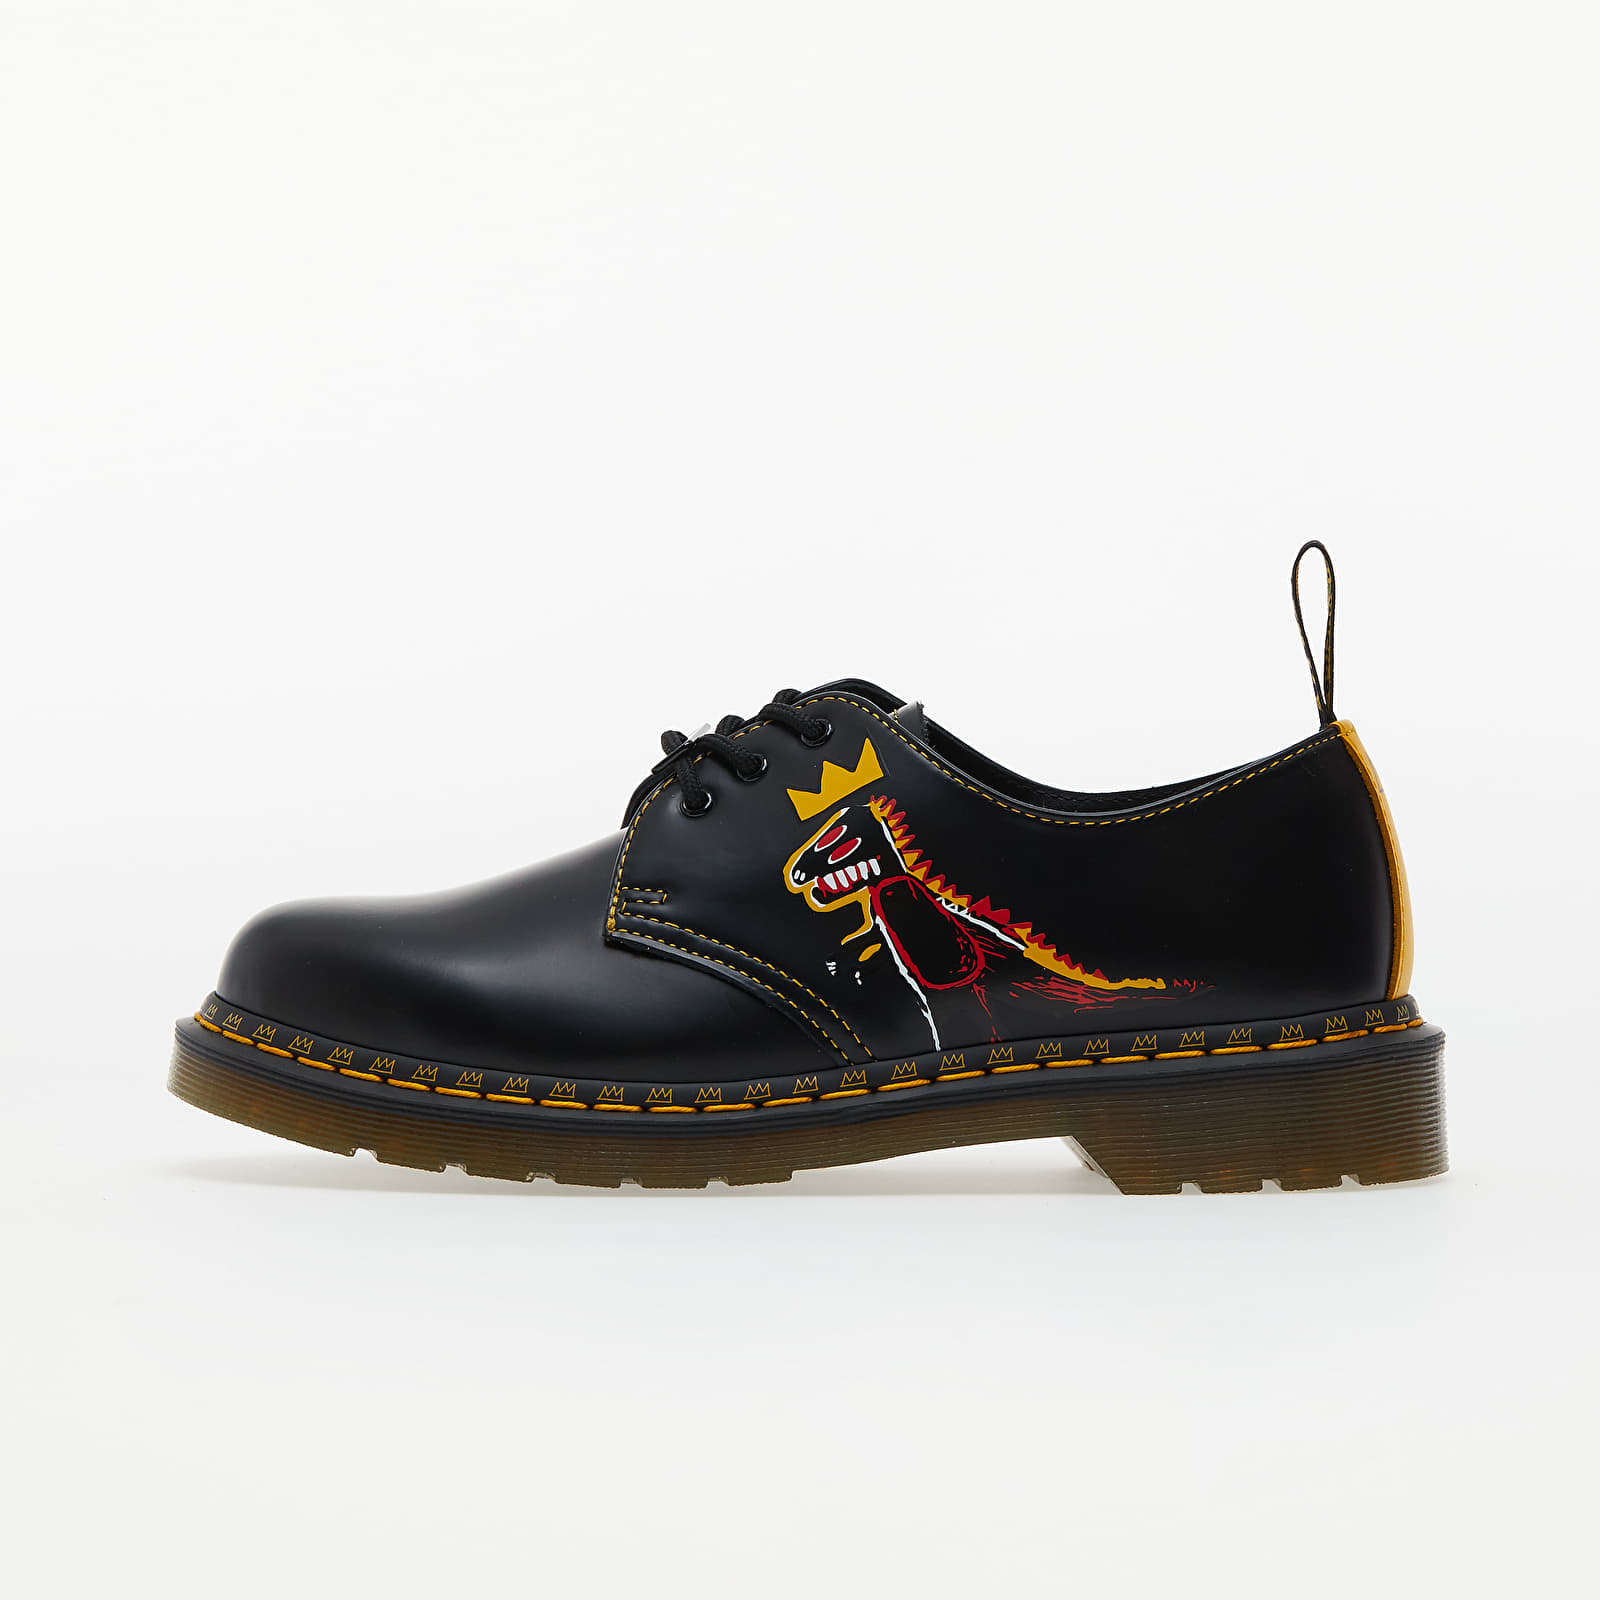 Men's shoes Dr. Martens x Jean-Michel Basquiat 1461 Black/ DMS Yellow